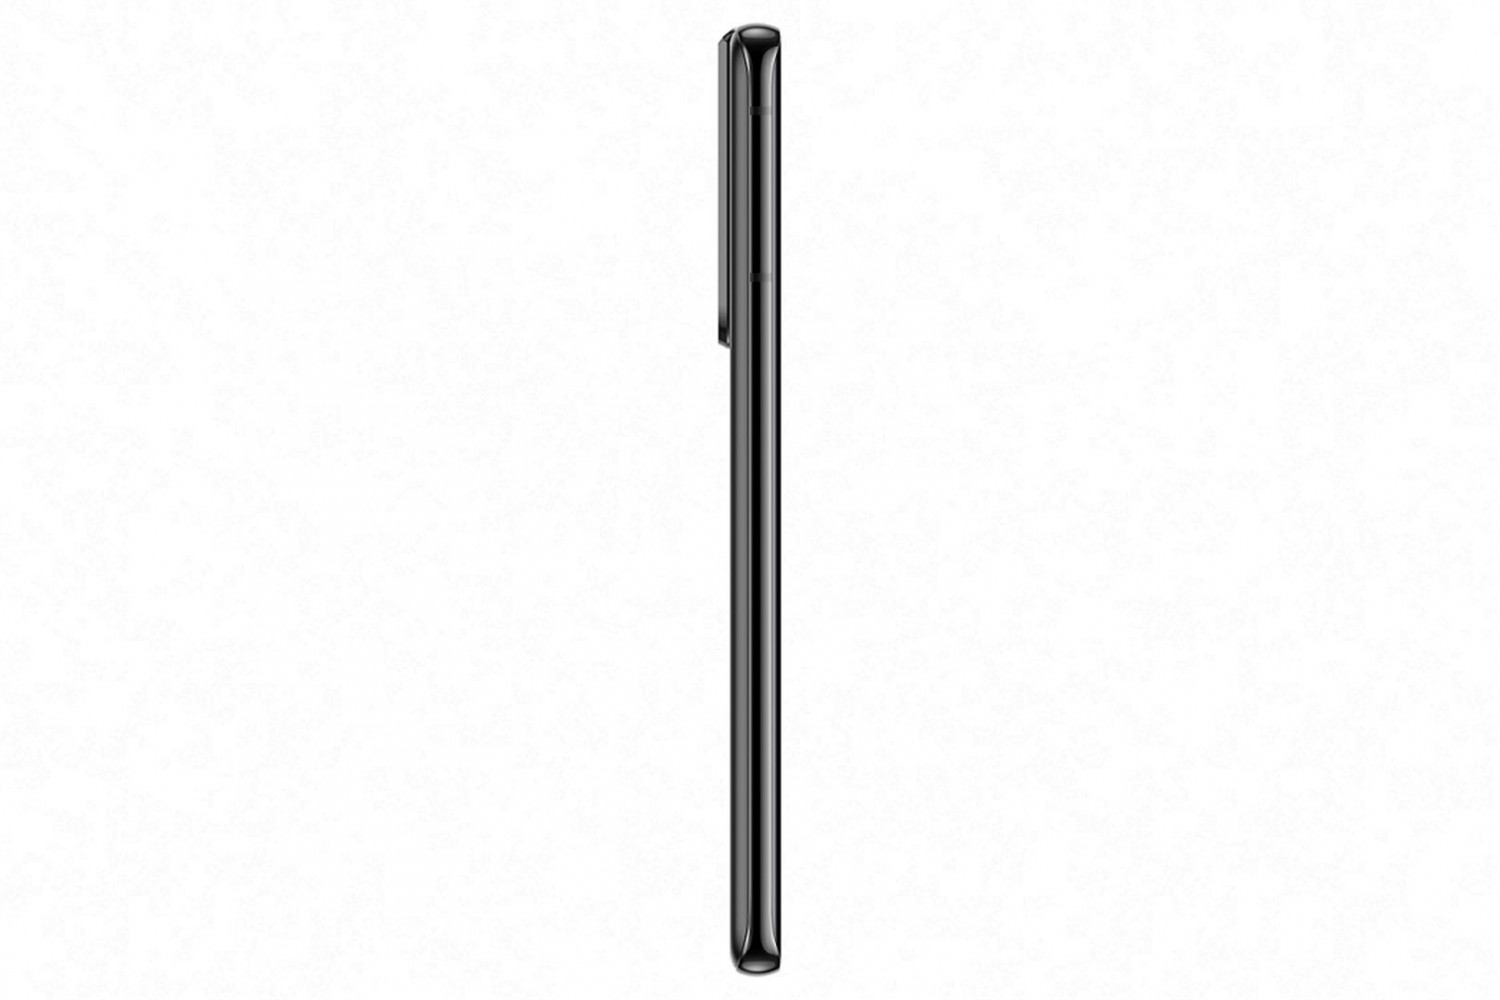 Samsung Galaxy S21 Ultra 5G (SM-G998) 12GB/128GB černá